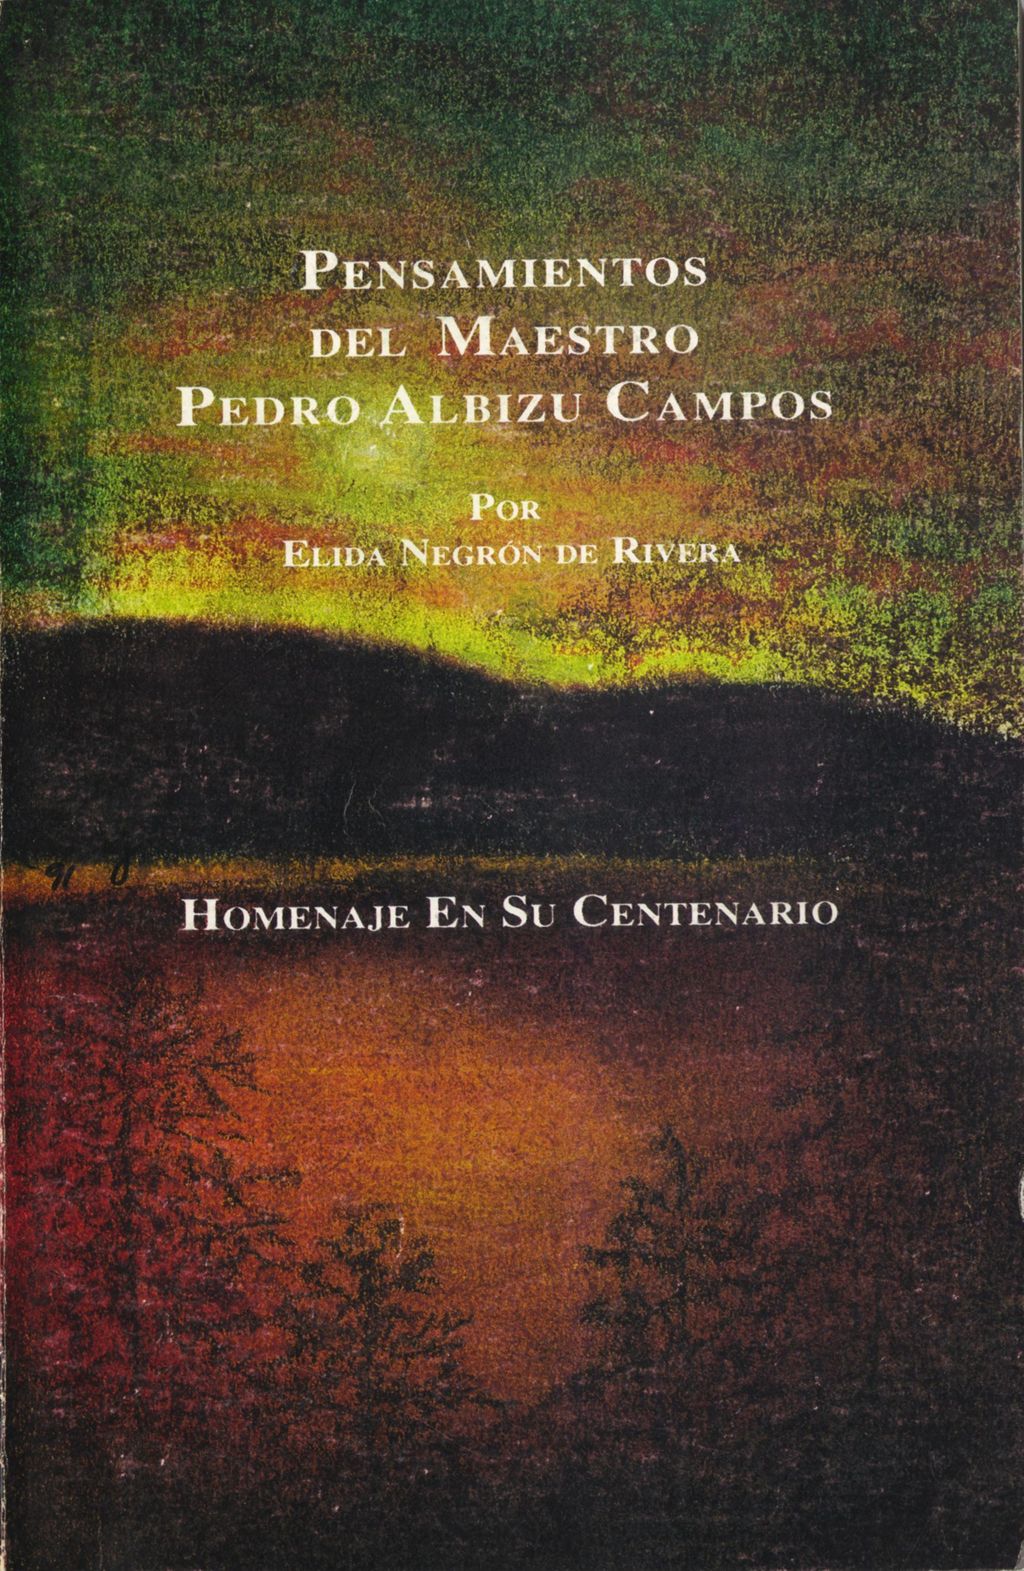 Pensamientos del Maestro Pedro Albizu Campos (Selected pages)